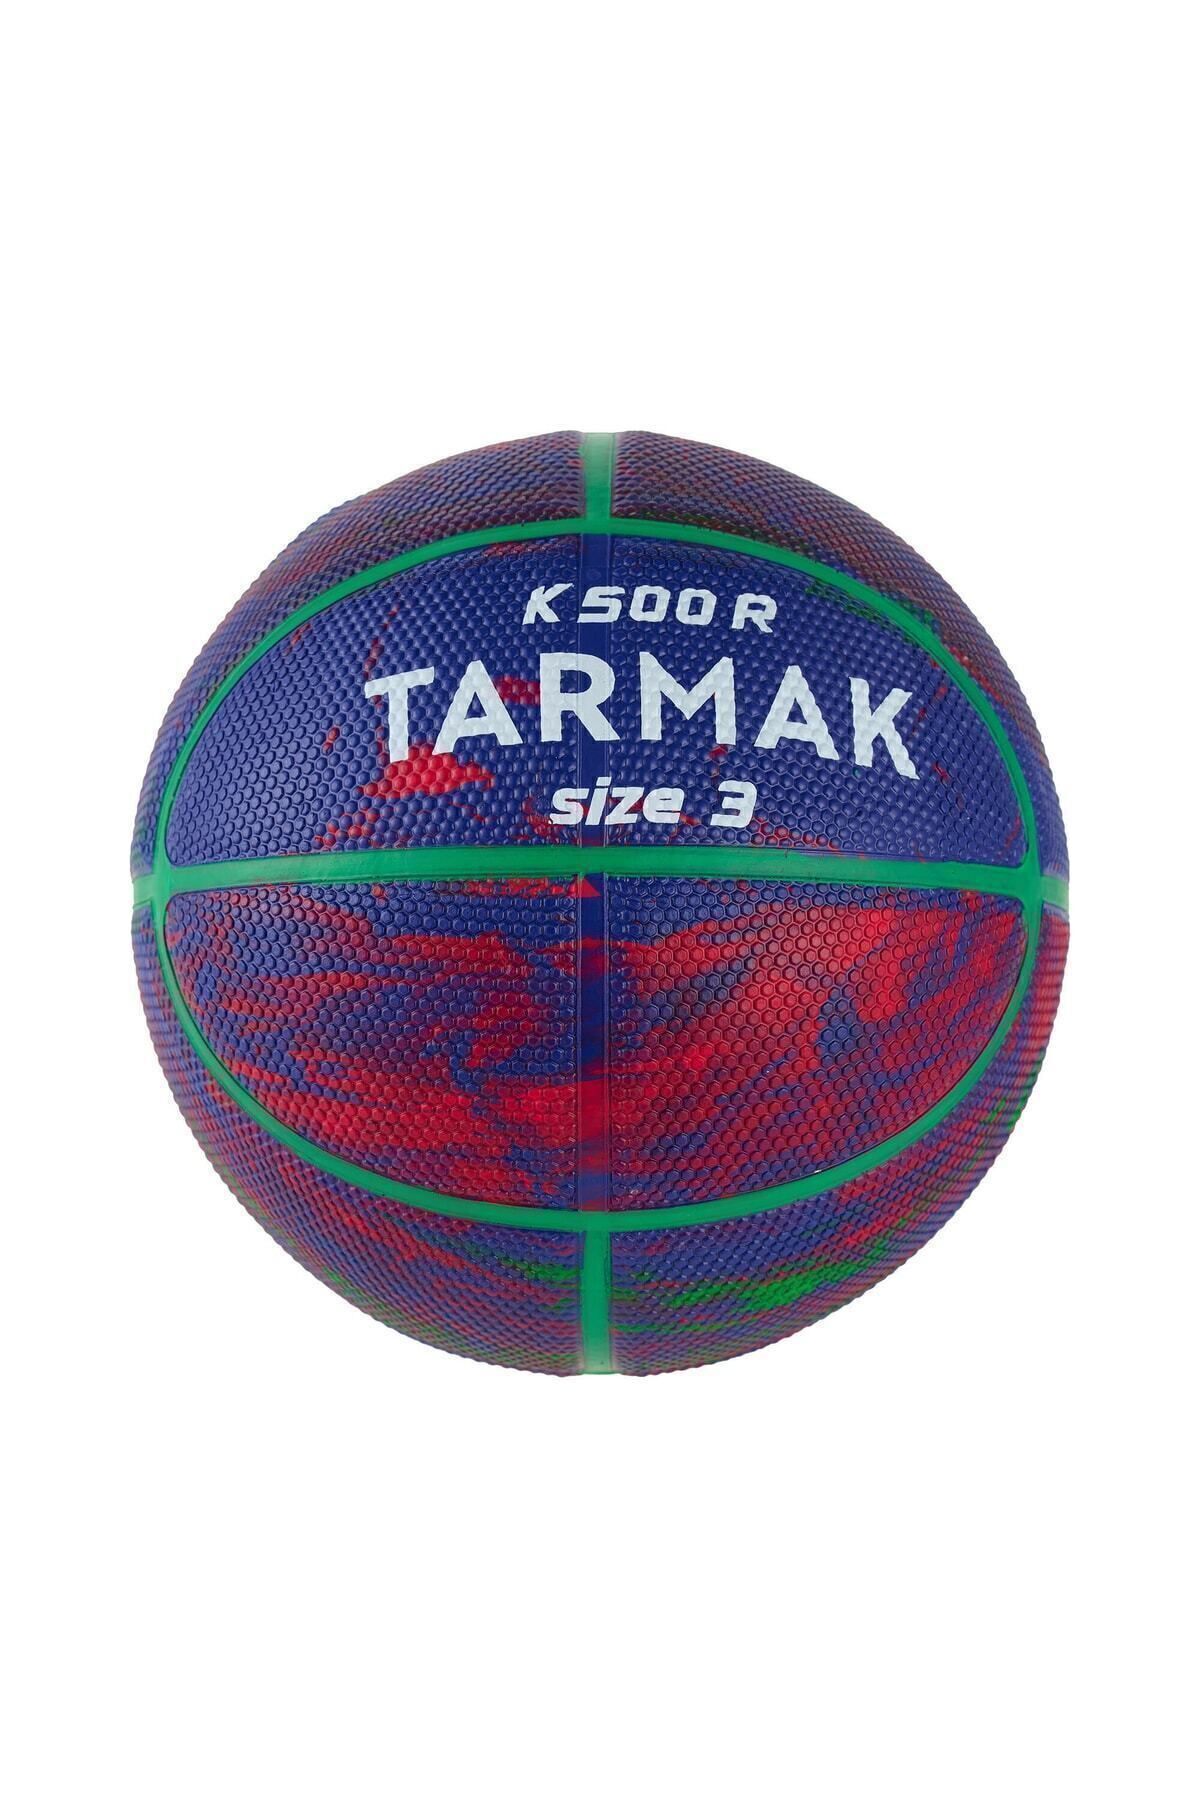 Decathlon Pompa dahil değildir Tarmak Çocuk Basketbol Topu - 3 Numara - Mavi / Kırmızı - K500 3 Numara FIBA M